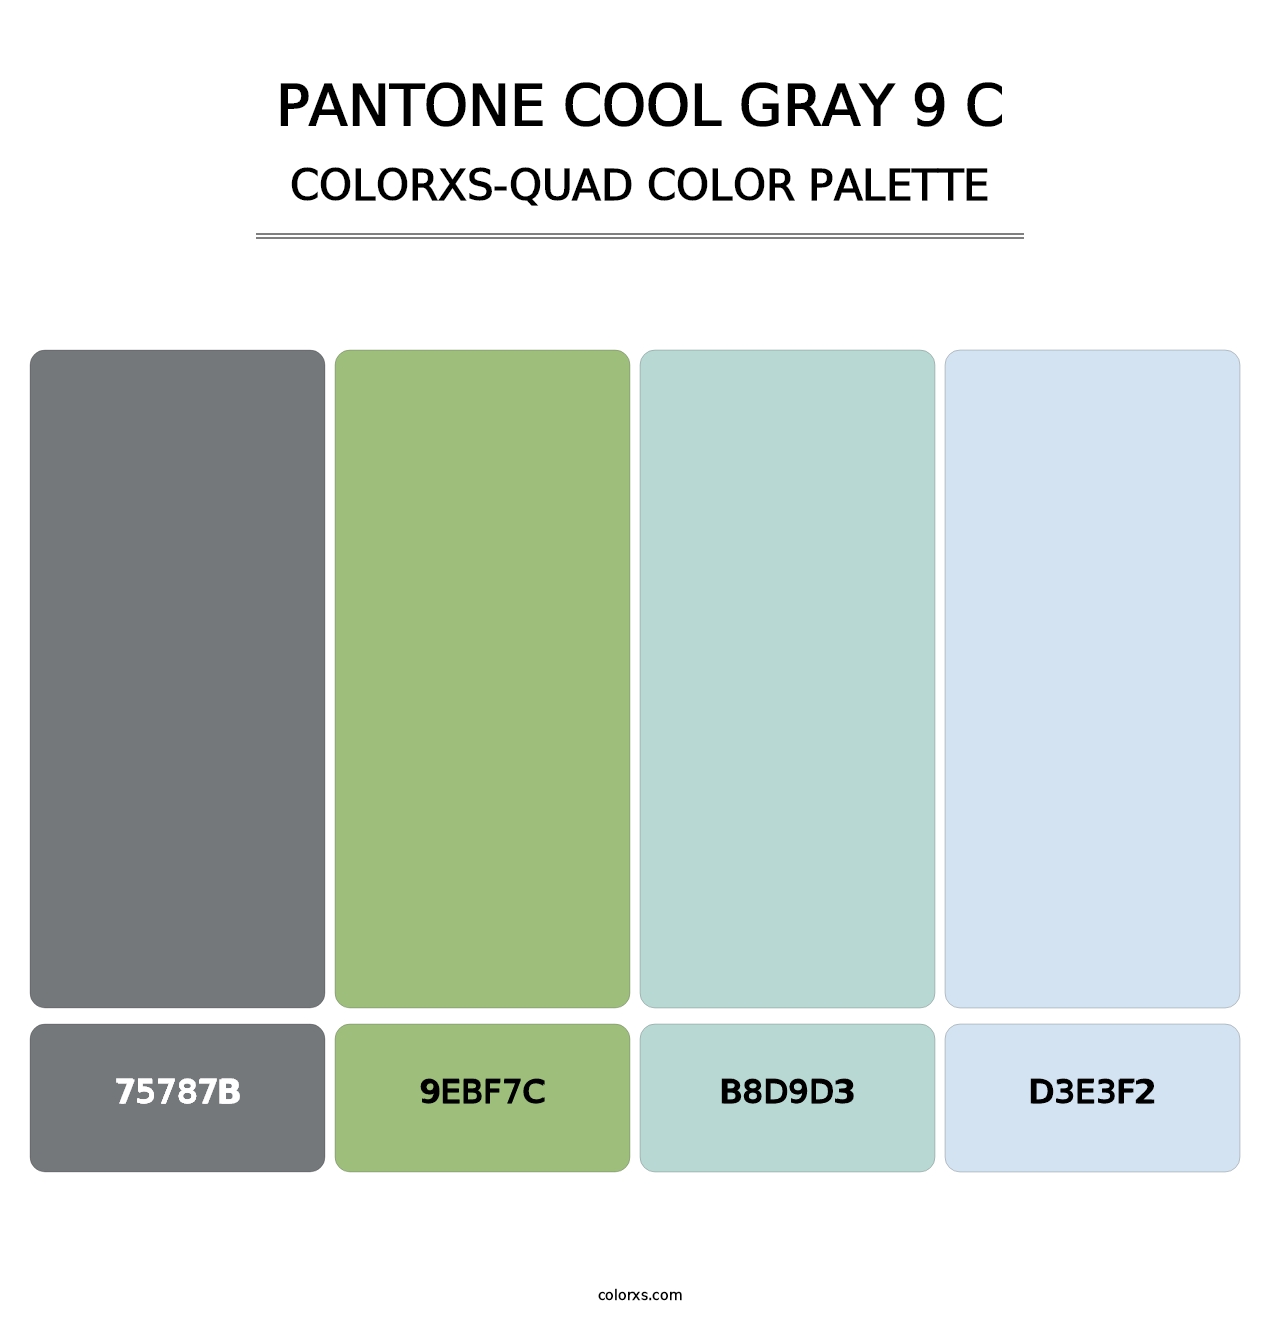 PANTONE Cool Gray 9 C - Colorxs Quad Palette